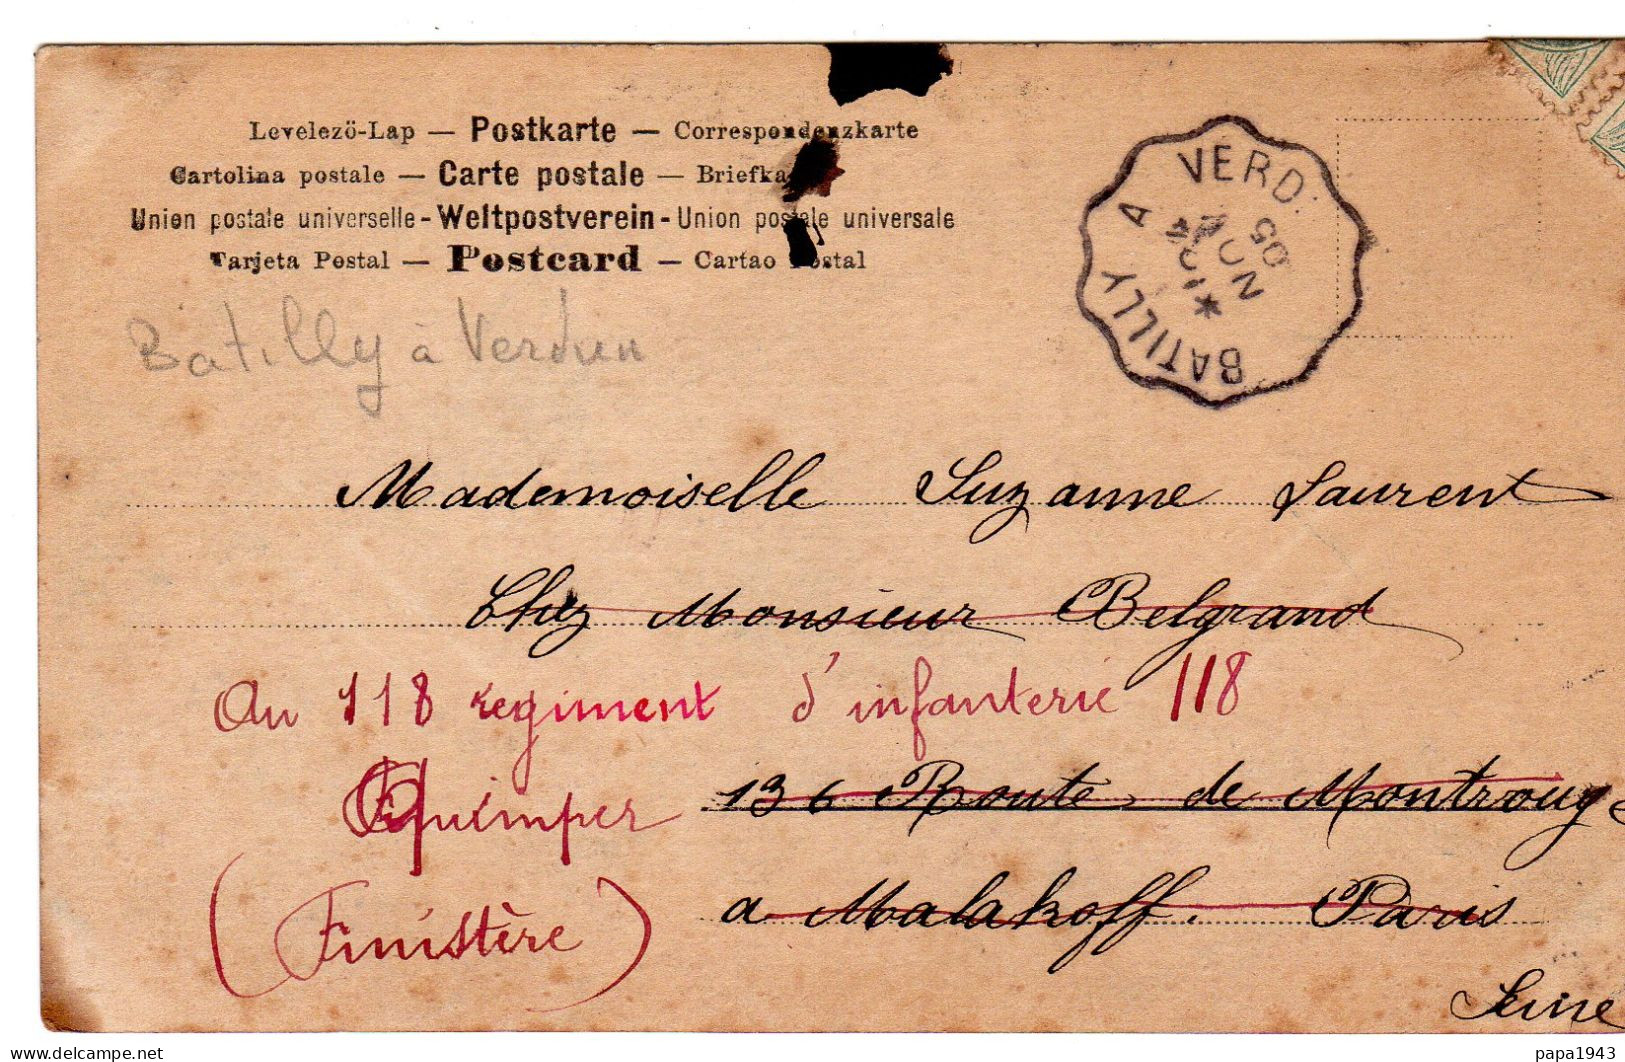 1905  C P  CAD Convoyeur De BATILLY à VERDUN - Covers & Documents